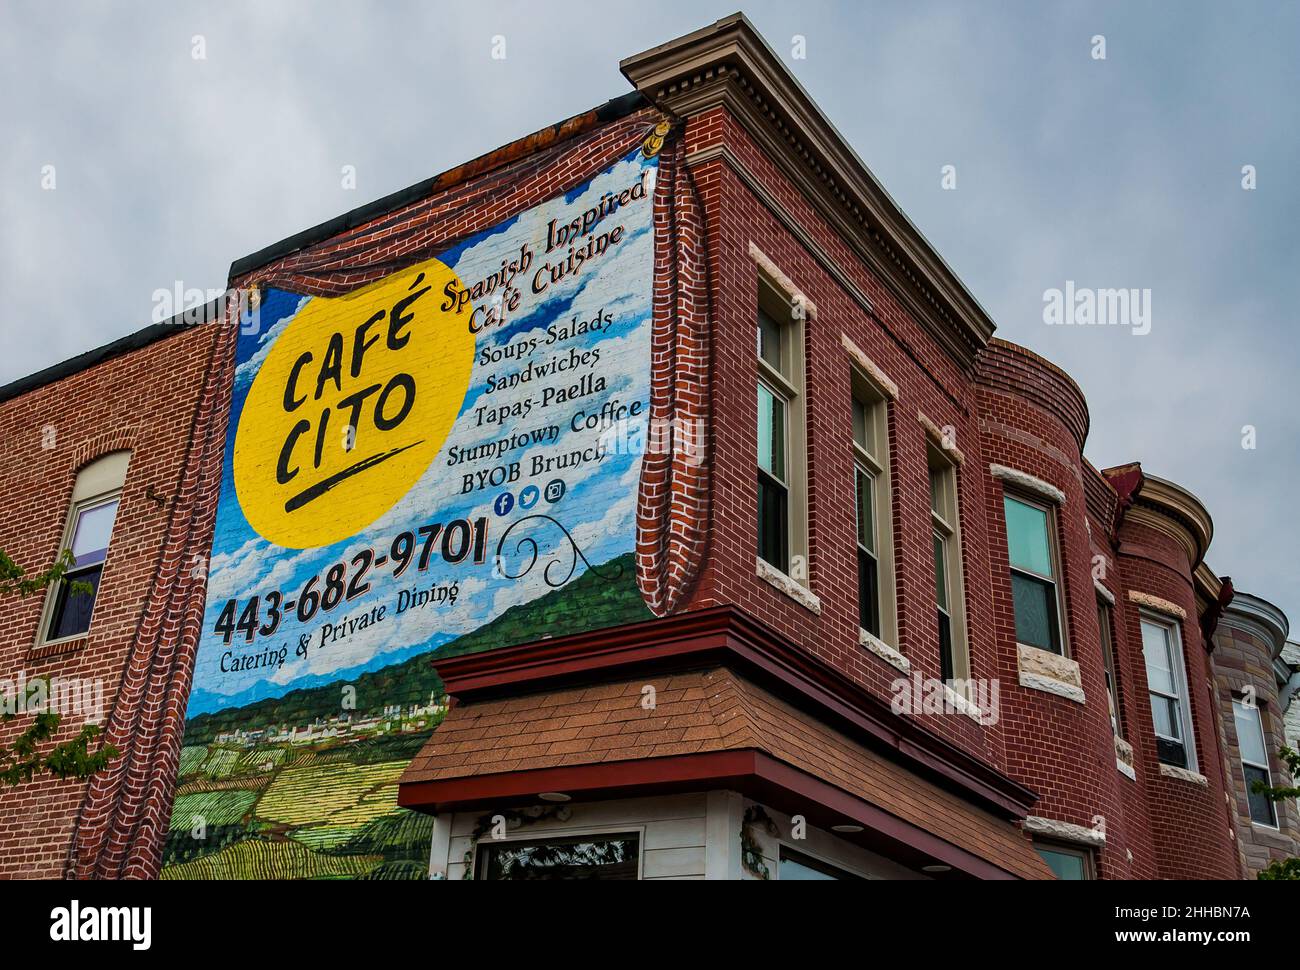 Cafe Cito Sign, Hampden, Baltimore, Maryland Stockfoto